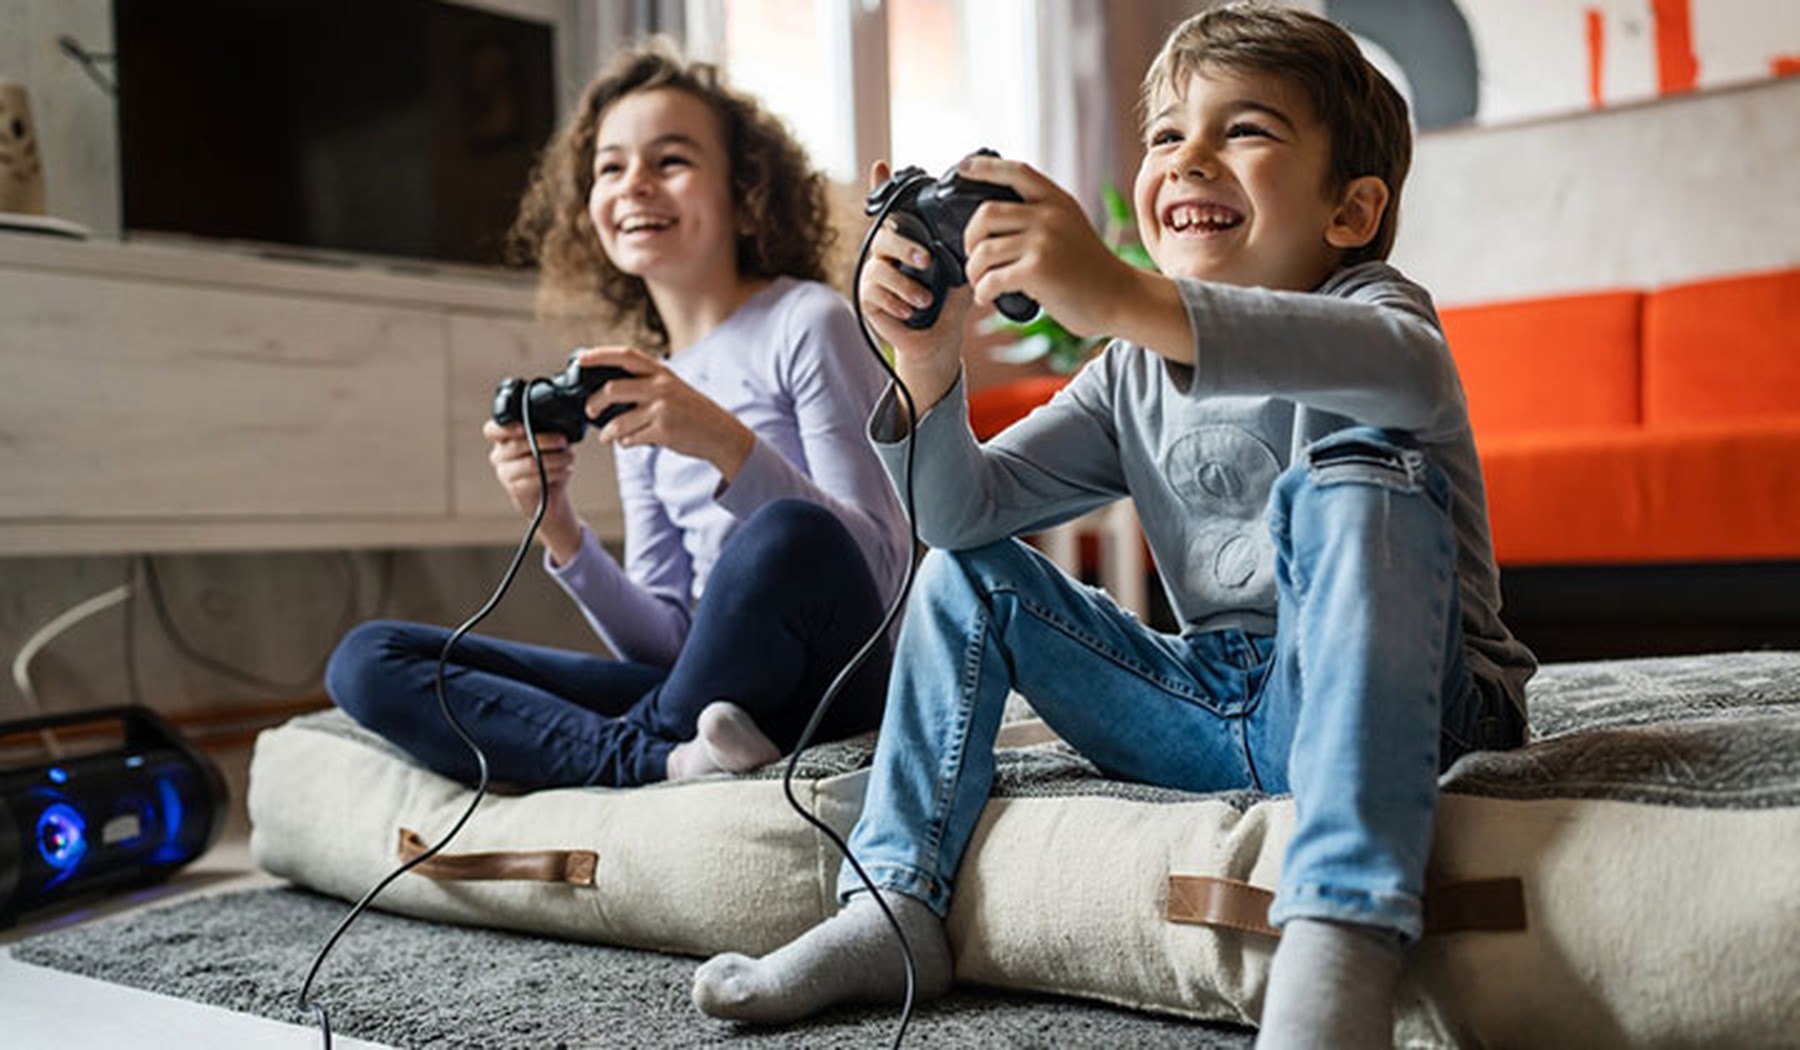 Un niño y una niña sonrientes jugando a videojuegos mientras están sentados en un cojín en el suelo de un salón